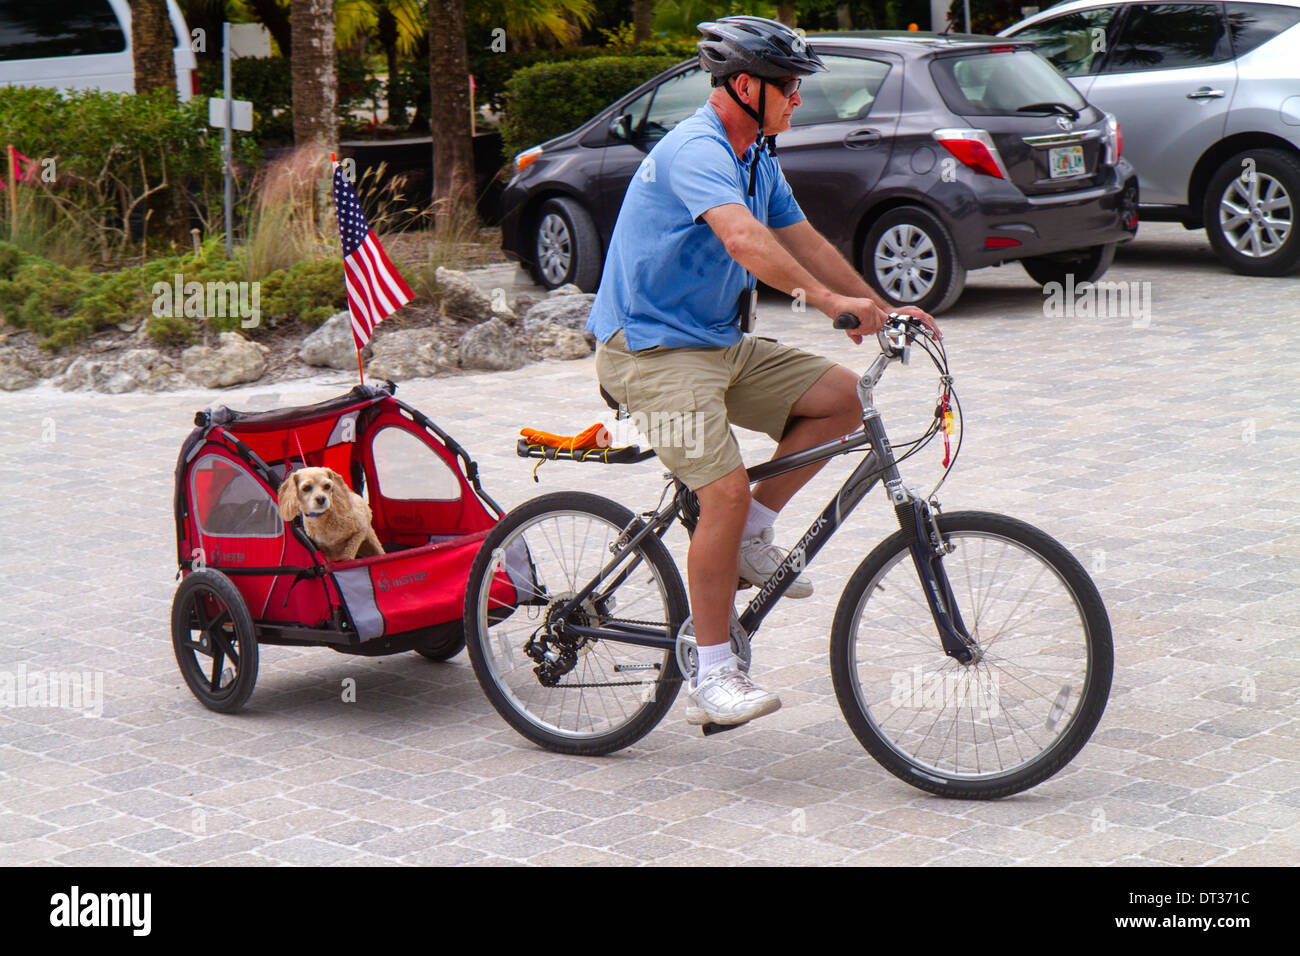 Florida Sanibel Barrier Island, adultes homme hommes, vélo, vélo, équitation, vélo, rider, chariot, chiens, animaux de compagnie, spaniel, équitation, remorquage, v Banque D'Images